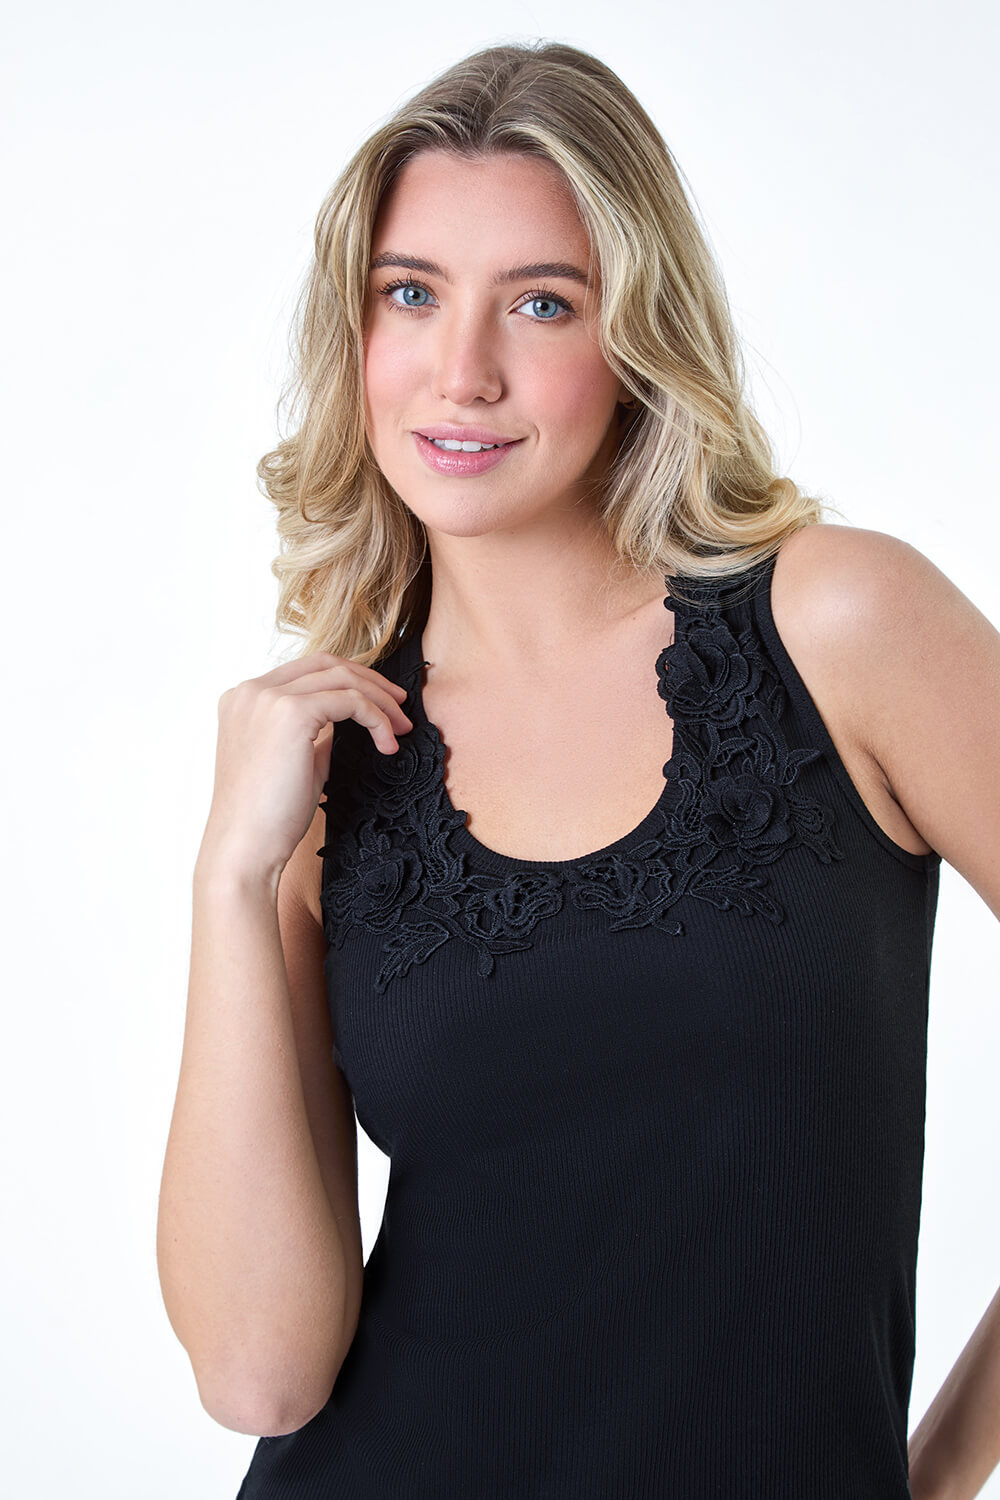 Black Floral Lace Trim Stretch Vest Top, Image 4 of 5